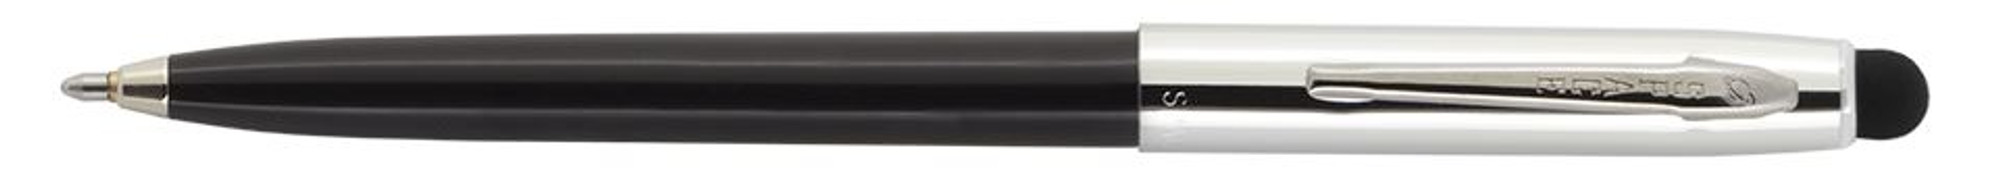 Fisher Space Pen Cap-O-Matic Black Barrel, Chrome Clip w/ Stylus